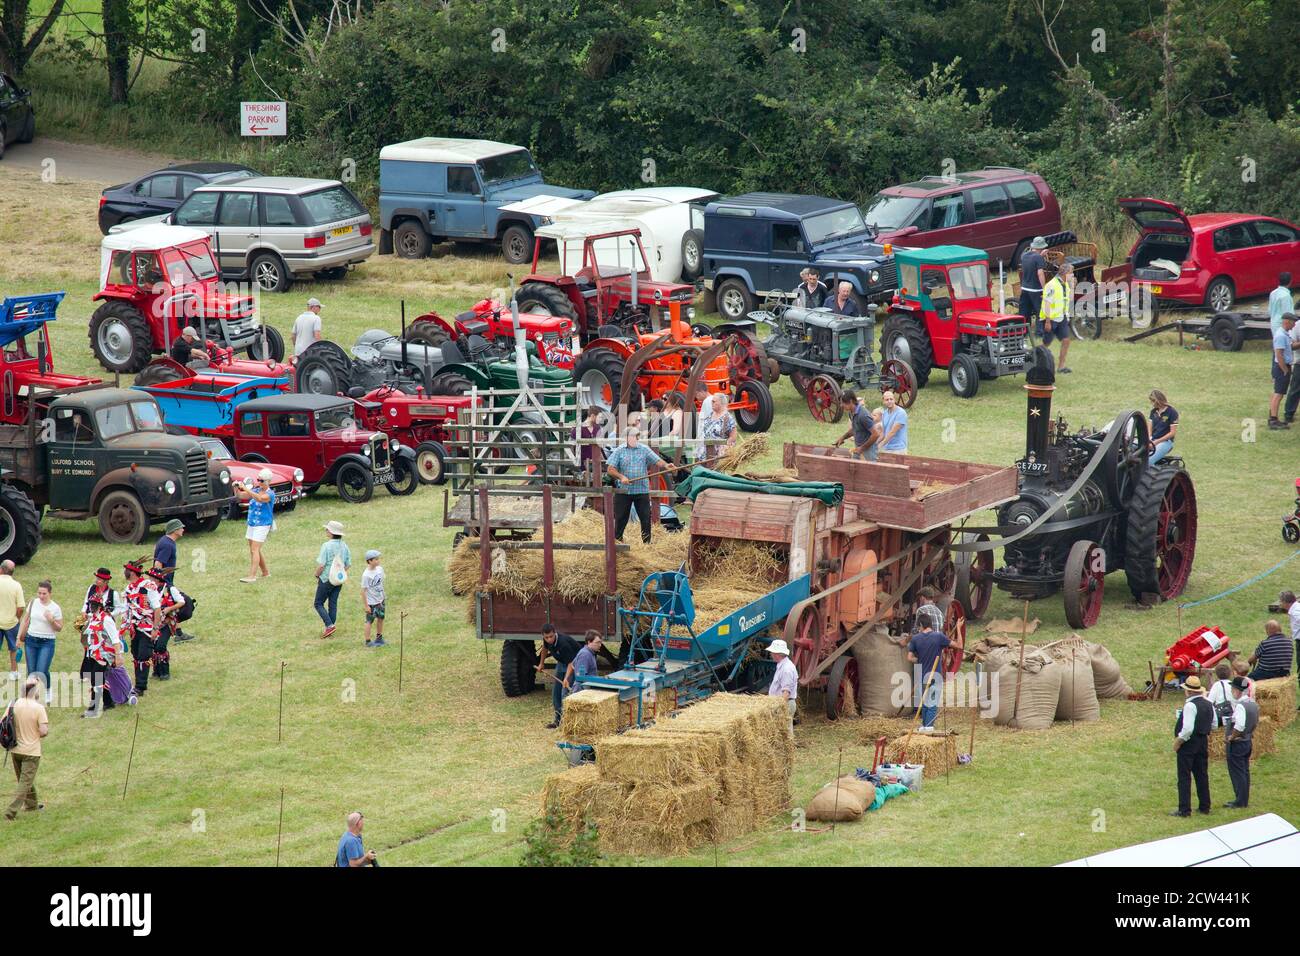 Máquina de trilla de época en un espectáculo agrícola en Bardwell, Suffolk, Reino Unido Foto de stock